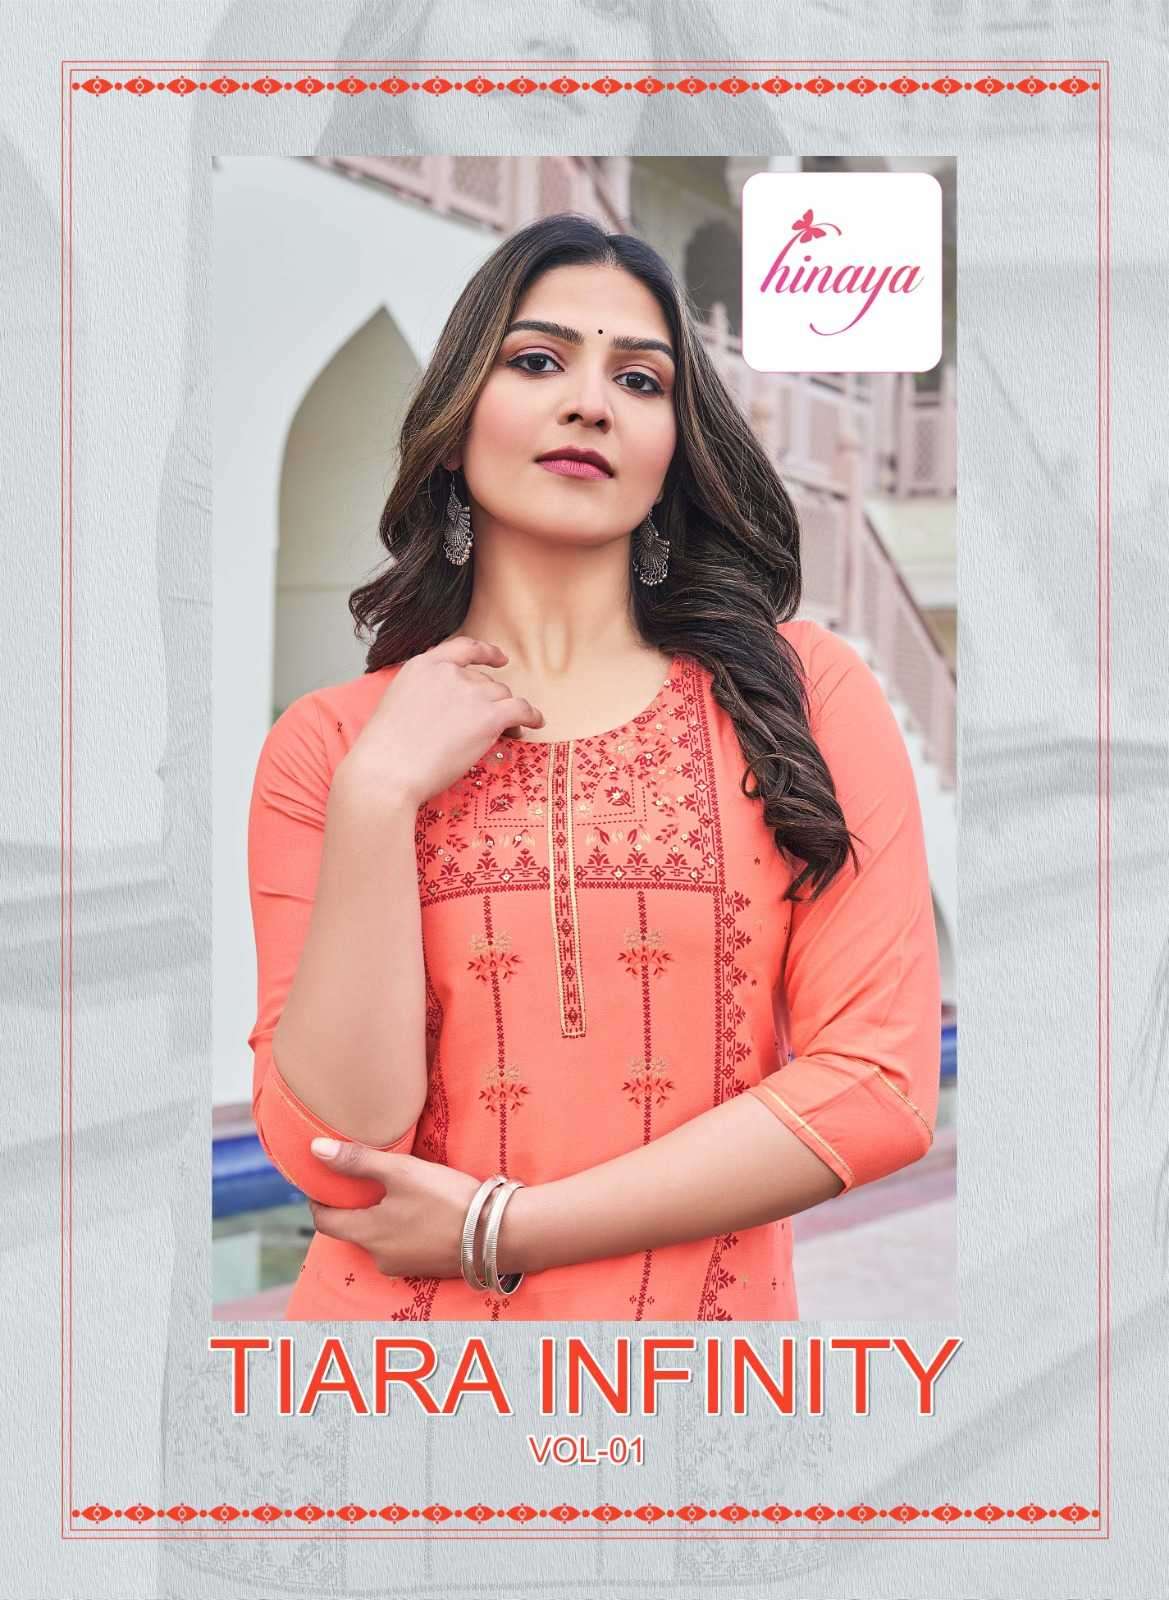 hinaya tiara infinity vol 1 series 1001-1008 rayon slub kurti